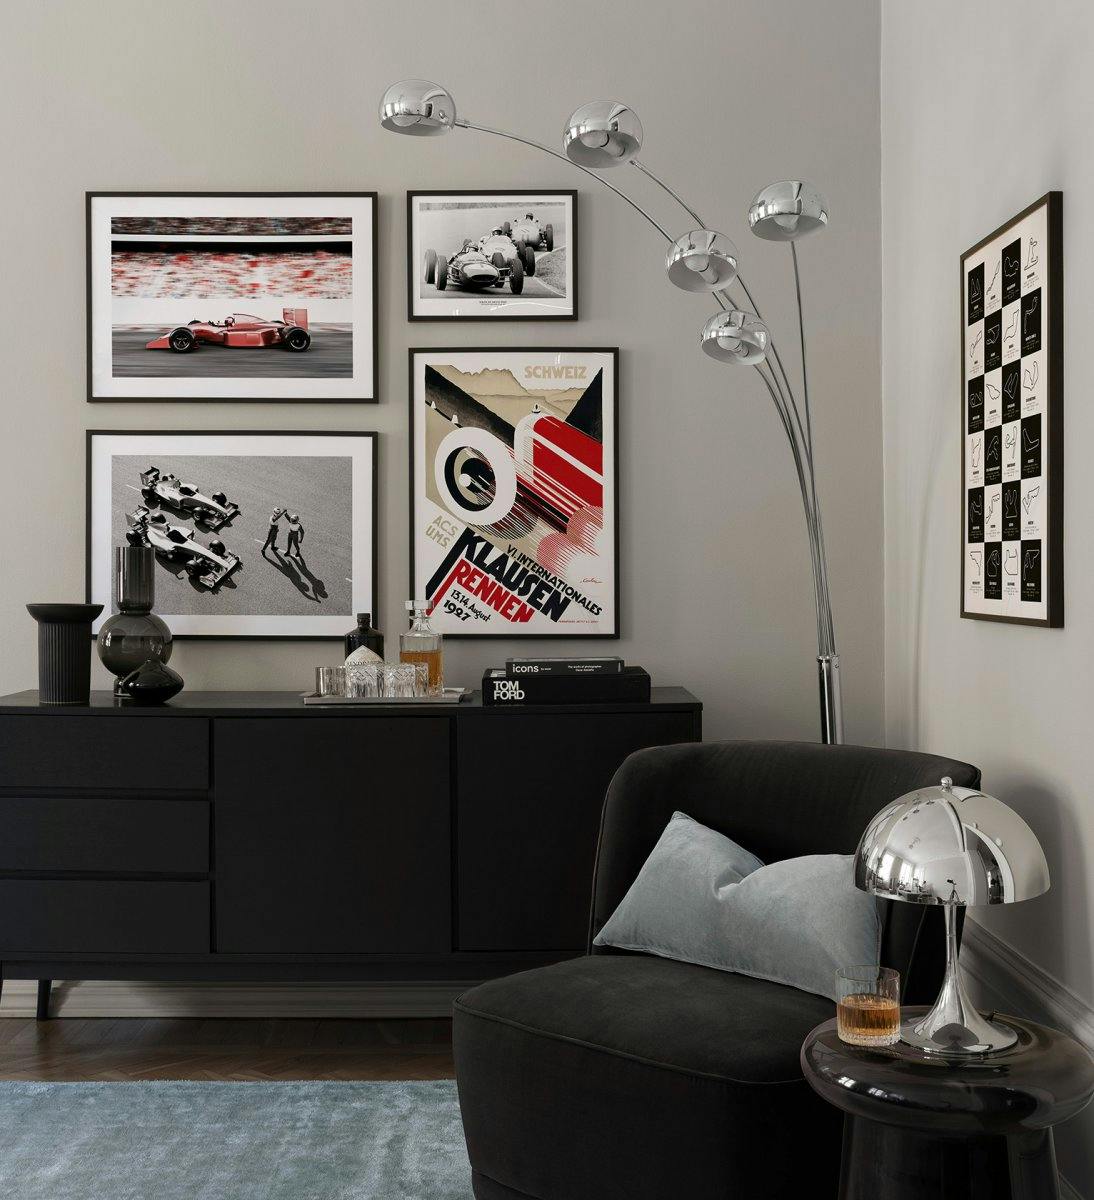 Kilpa-autotauluseinä, jossa on kuvia ja kuvituksia Formula 1 -autoista ja mustat puukehykset olohuoneeseen.